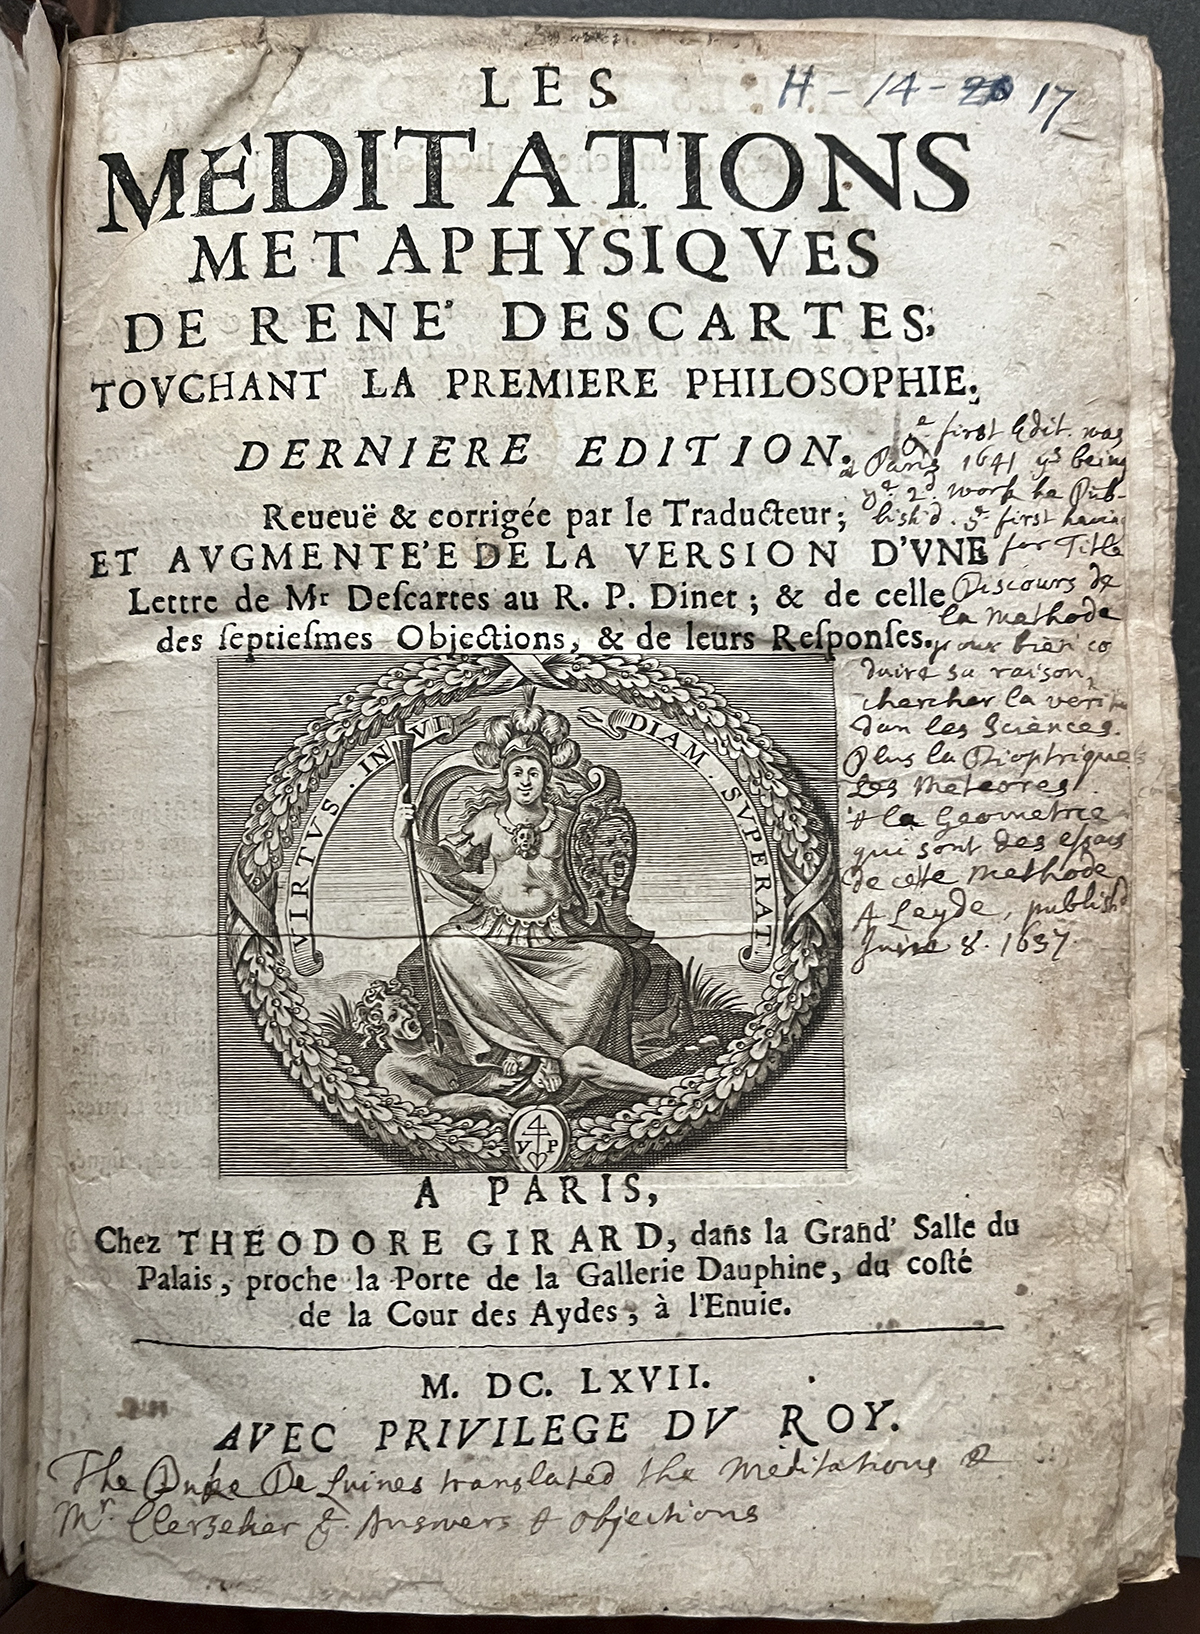 Les Méditations Métaphysiques by René Descartes